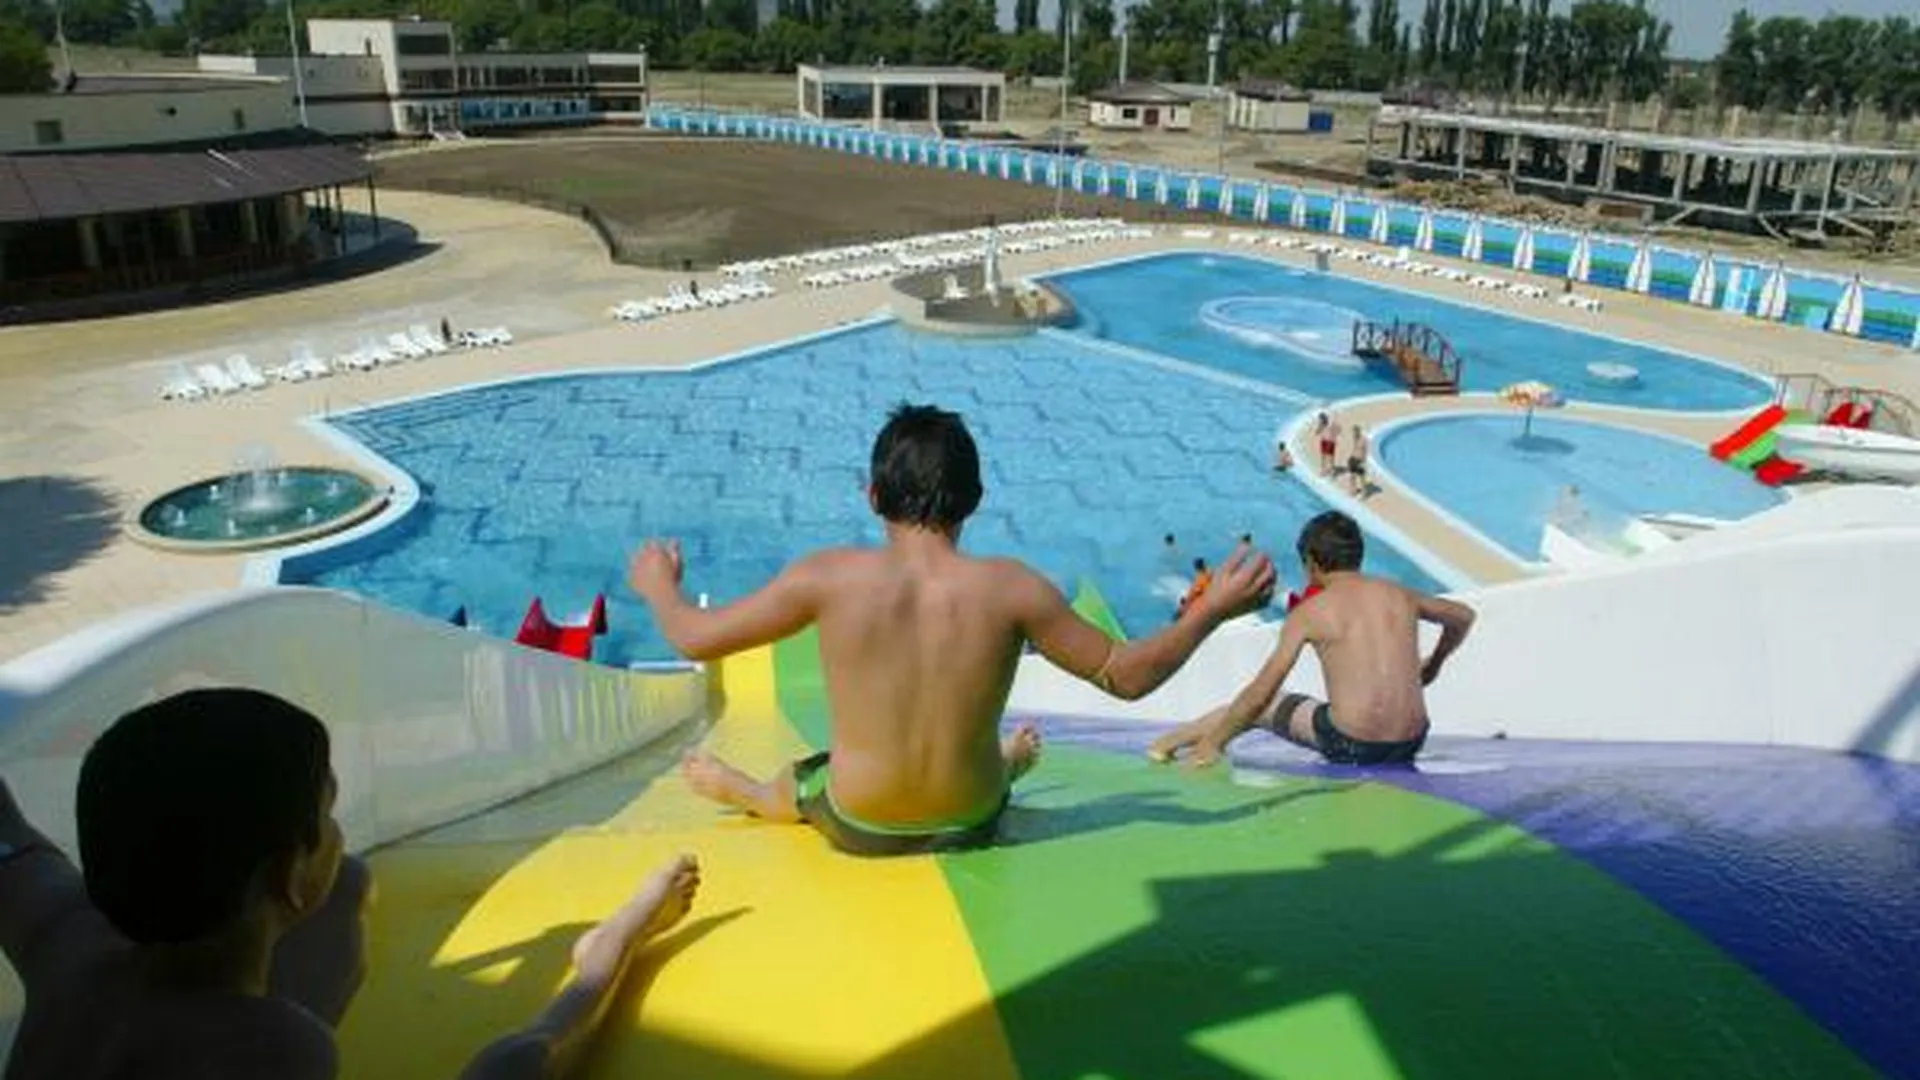 Самый большой в России аквапарк с площадками для серфинга и виртуальным аквариумом появится в Подмосковье